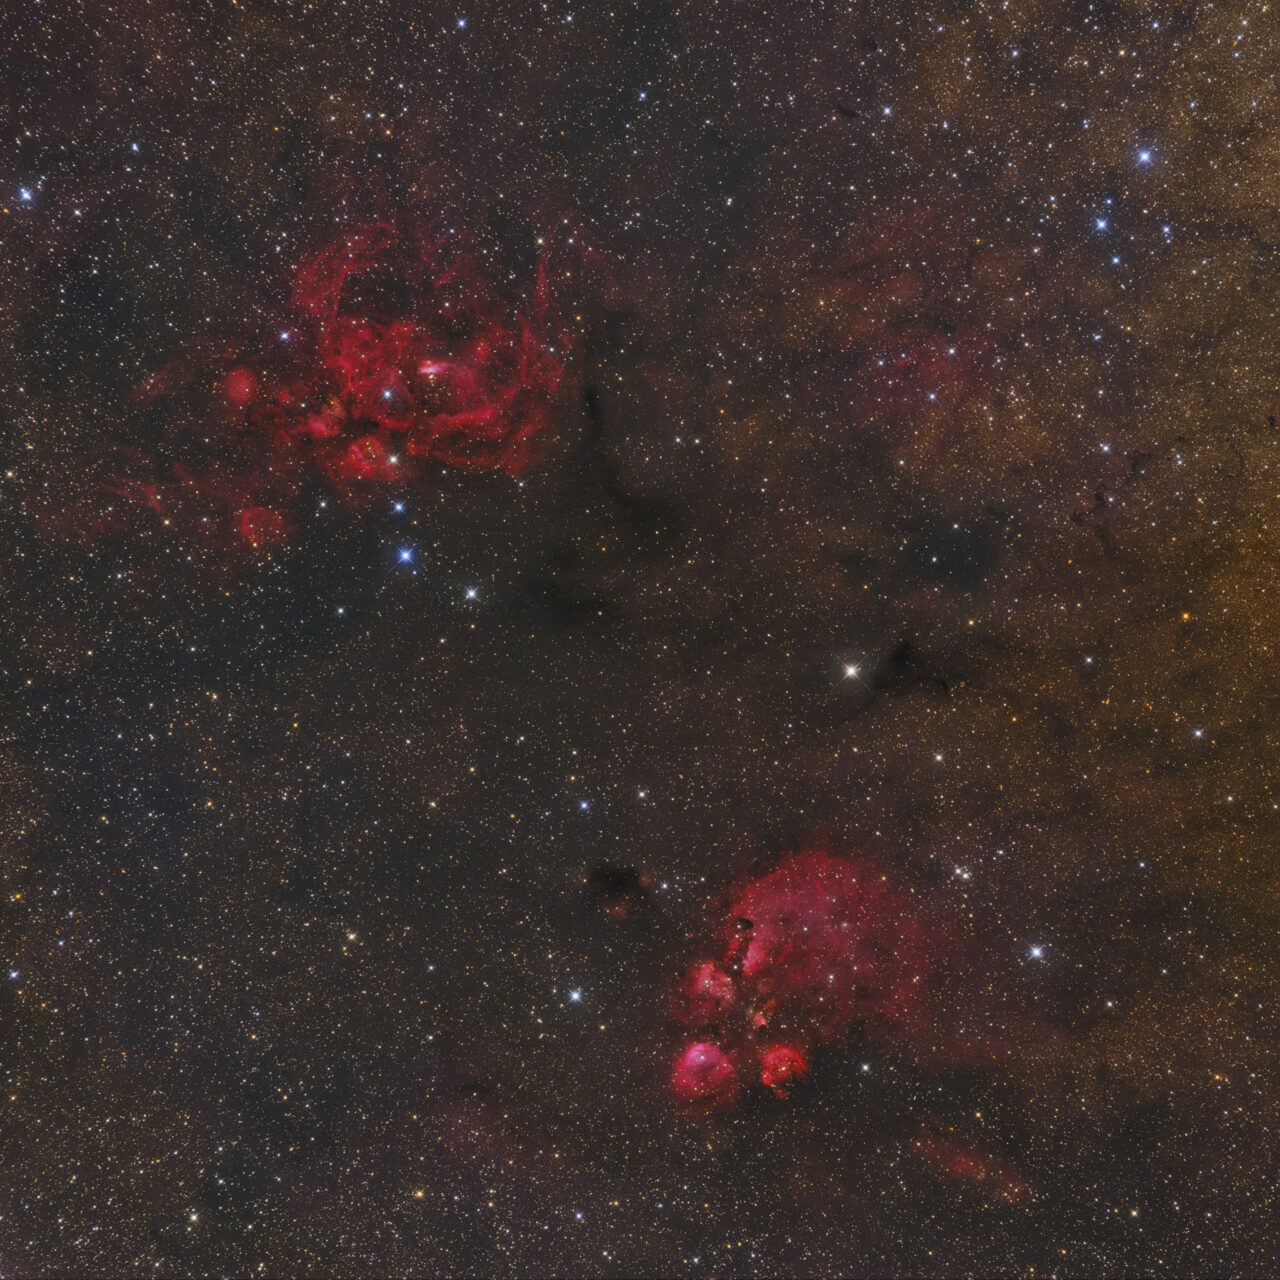 NGC 6334